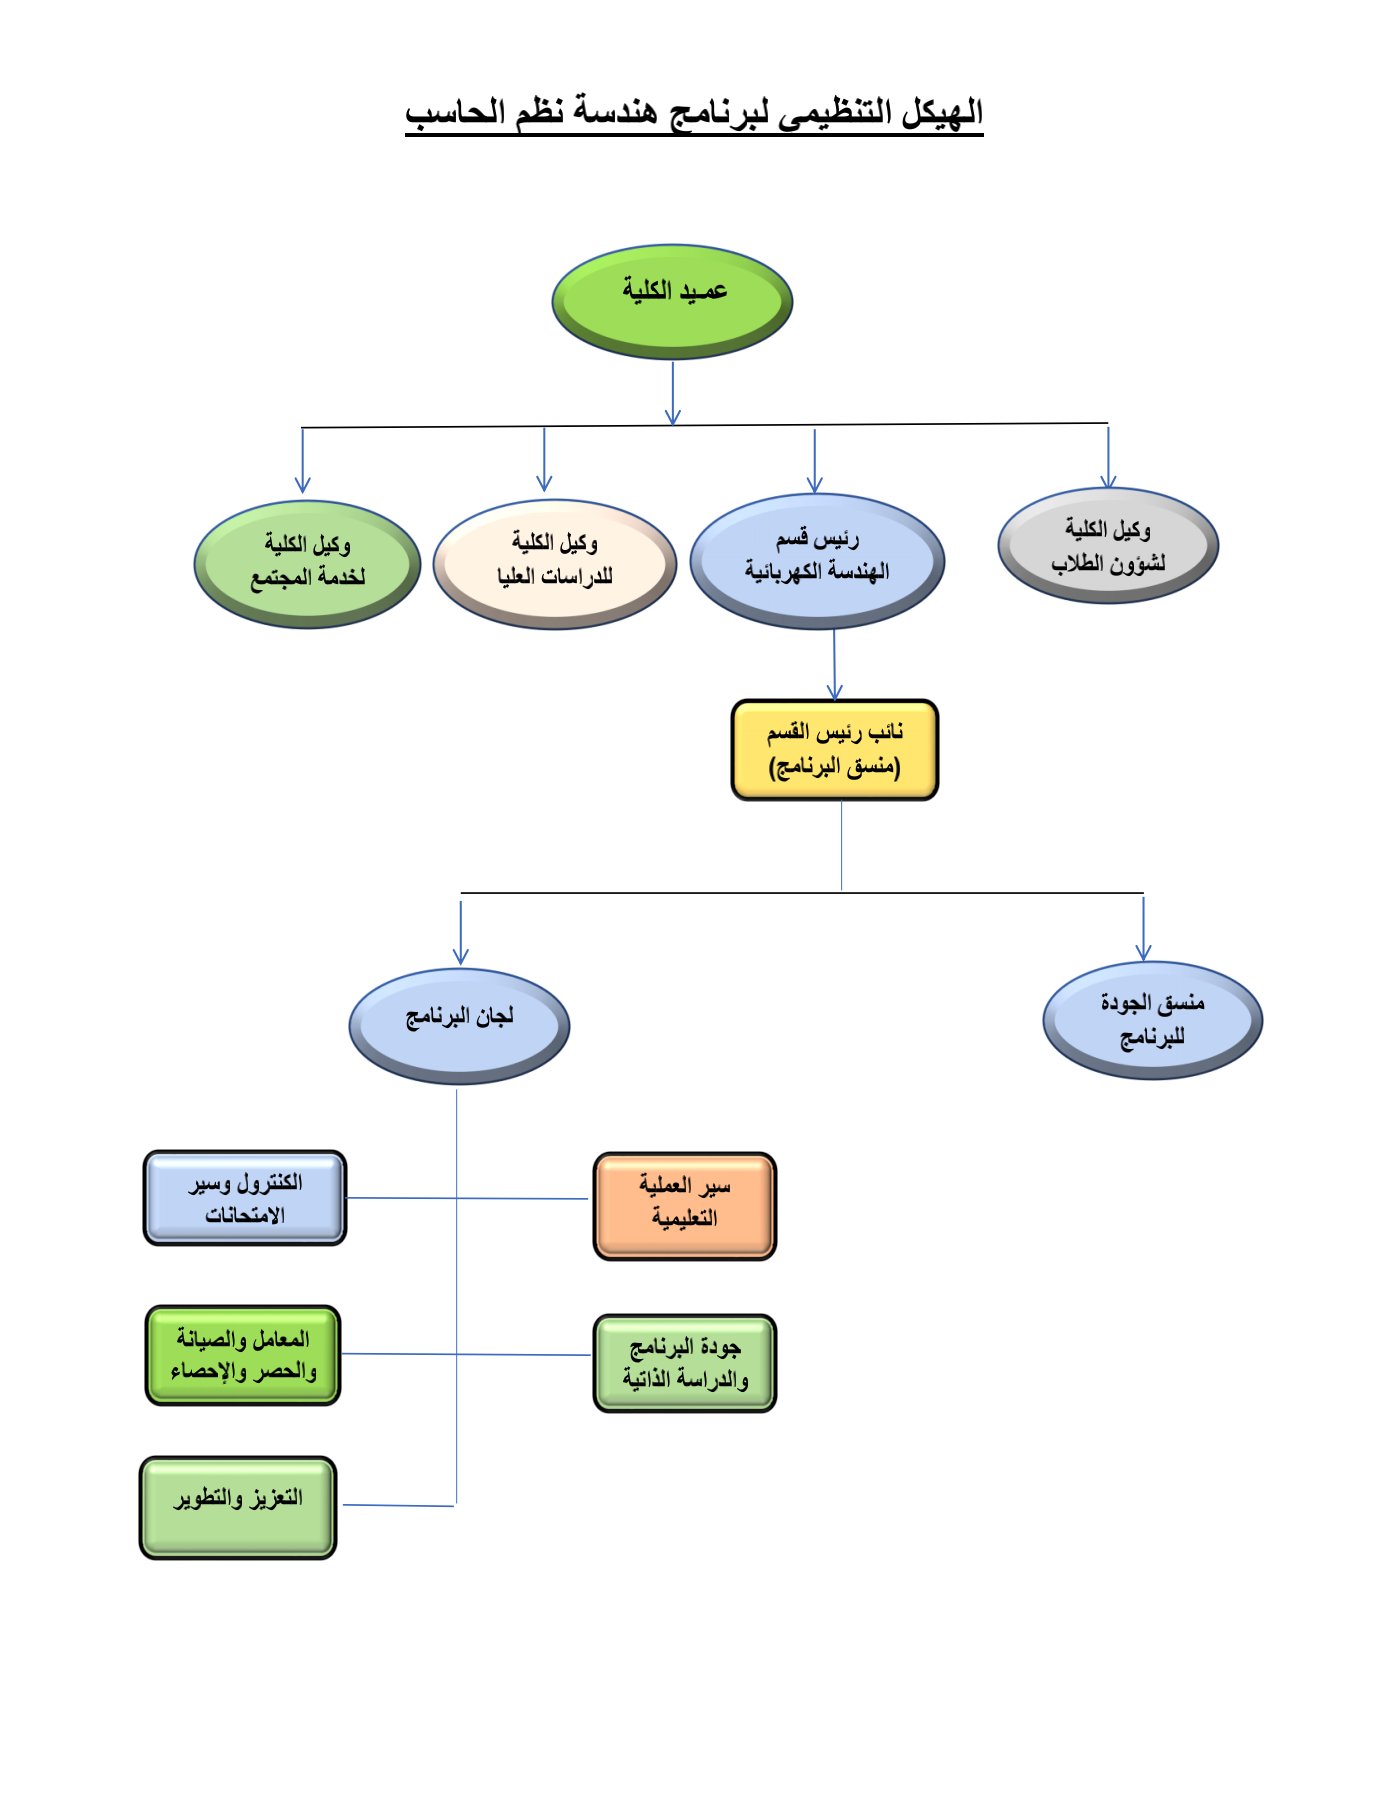 الهيكل التنظيمي لبرنامج هندسة نظم الحاسب